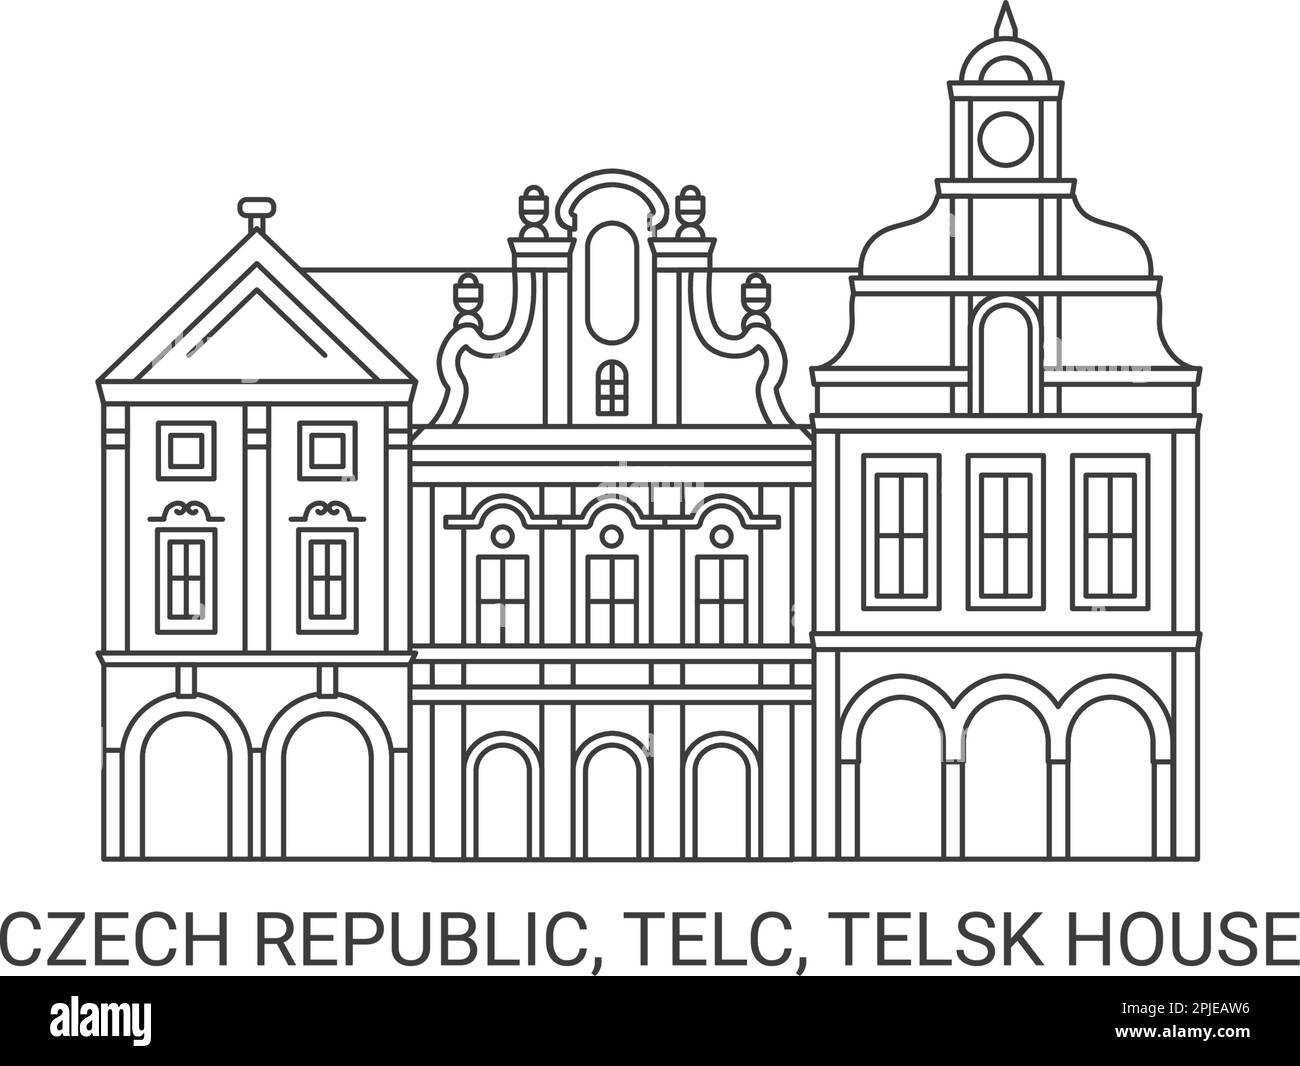 République tchèque, Telc, Telsk House Voyage illustration vecteur Illustration de Vecteur